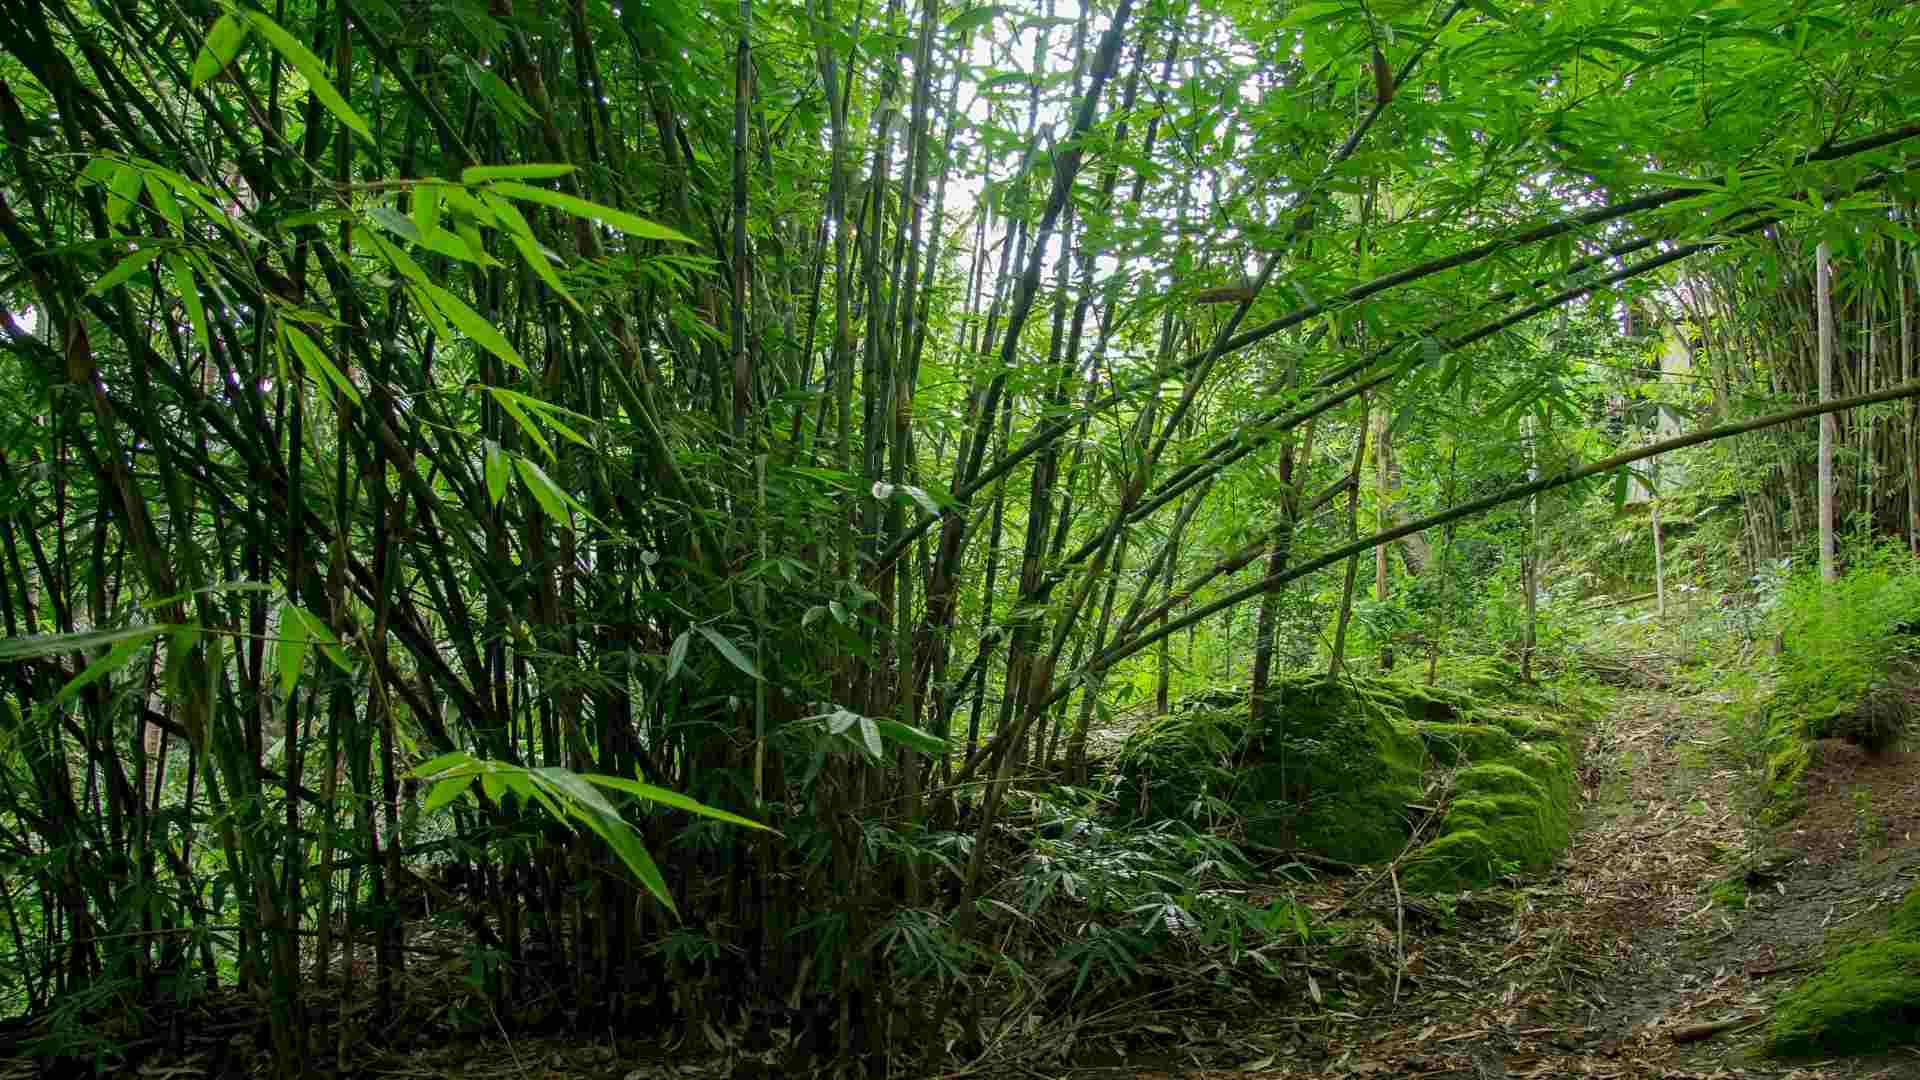 Gigantochloa atter giant bamboo